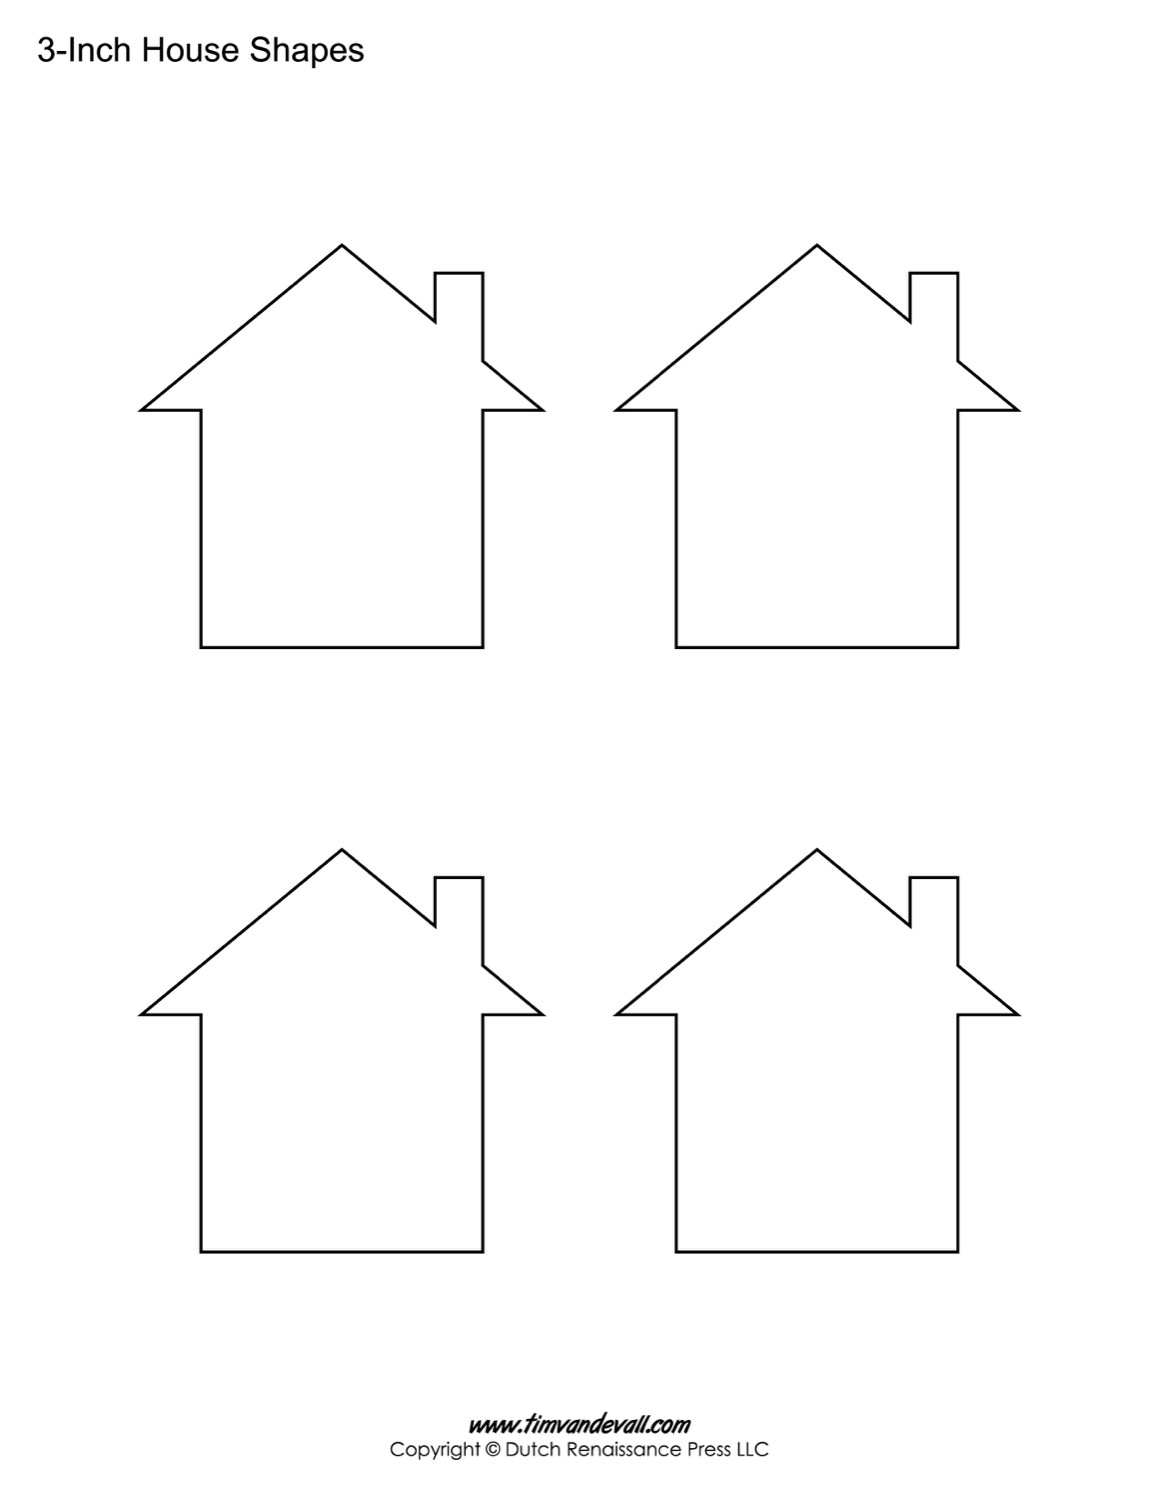 House Templates | Free Blank House Shape Pdfs - Free Shape Templates Printable